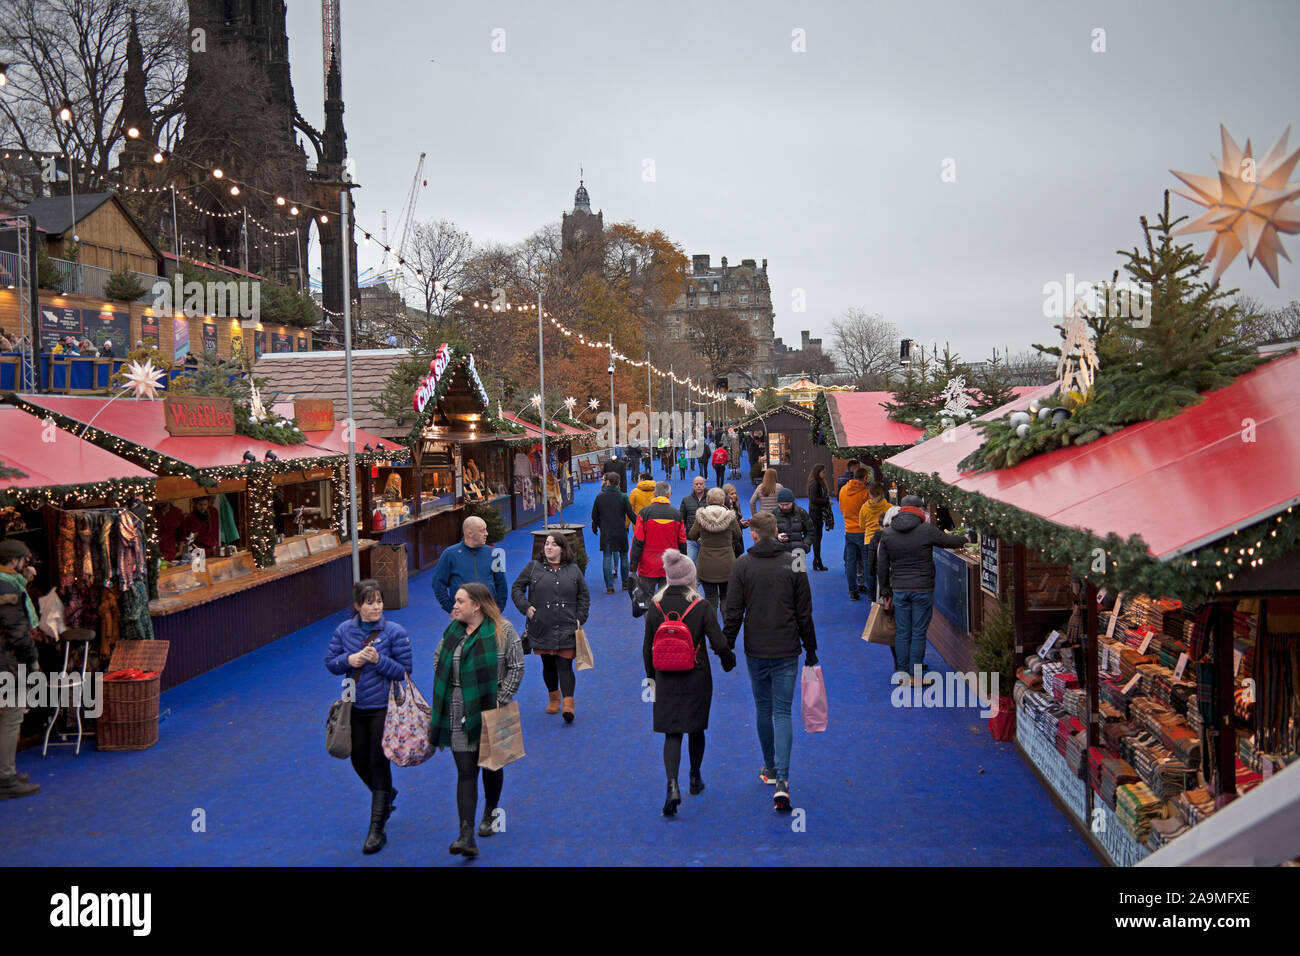 Die Princes Street Gardens, Edinburgh, Schottland, Vereinigtes Königreich. 16. November 2019. Weihnachtsmarkt und Kirmes öffnet zu spät. Menschen Mühle rund um die Stände auf der Suche nach Geschenke und Geschenke. Stockfoto